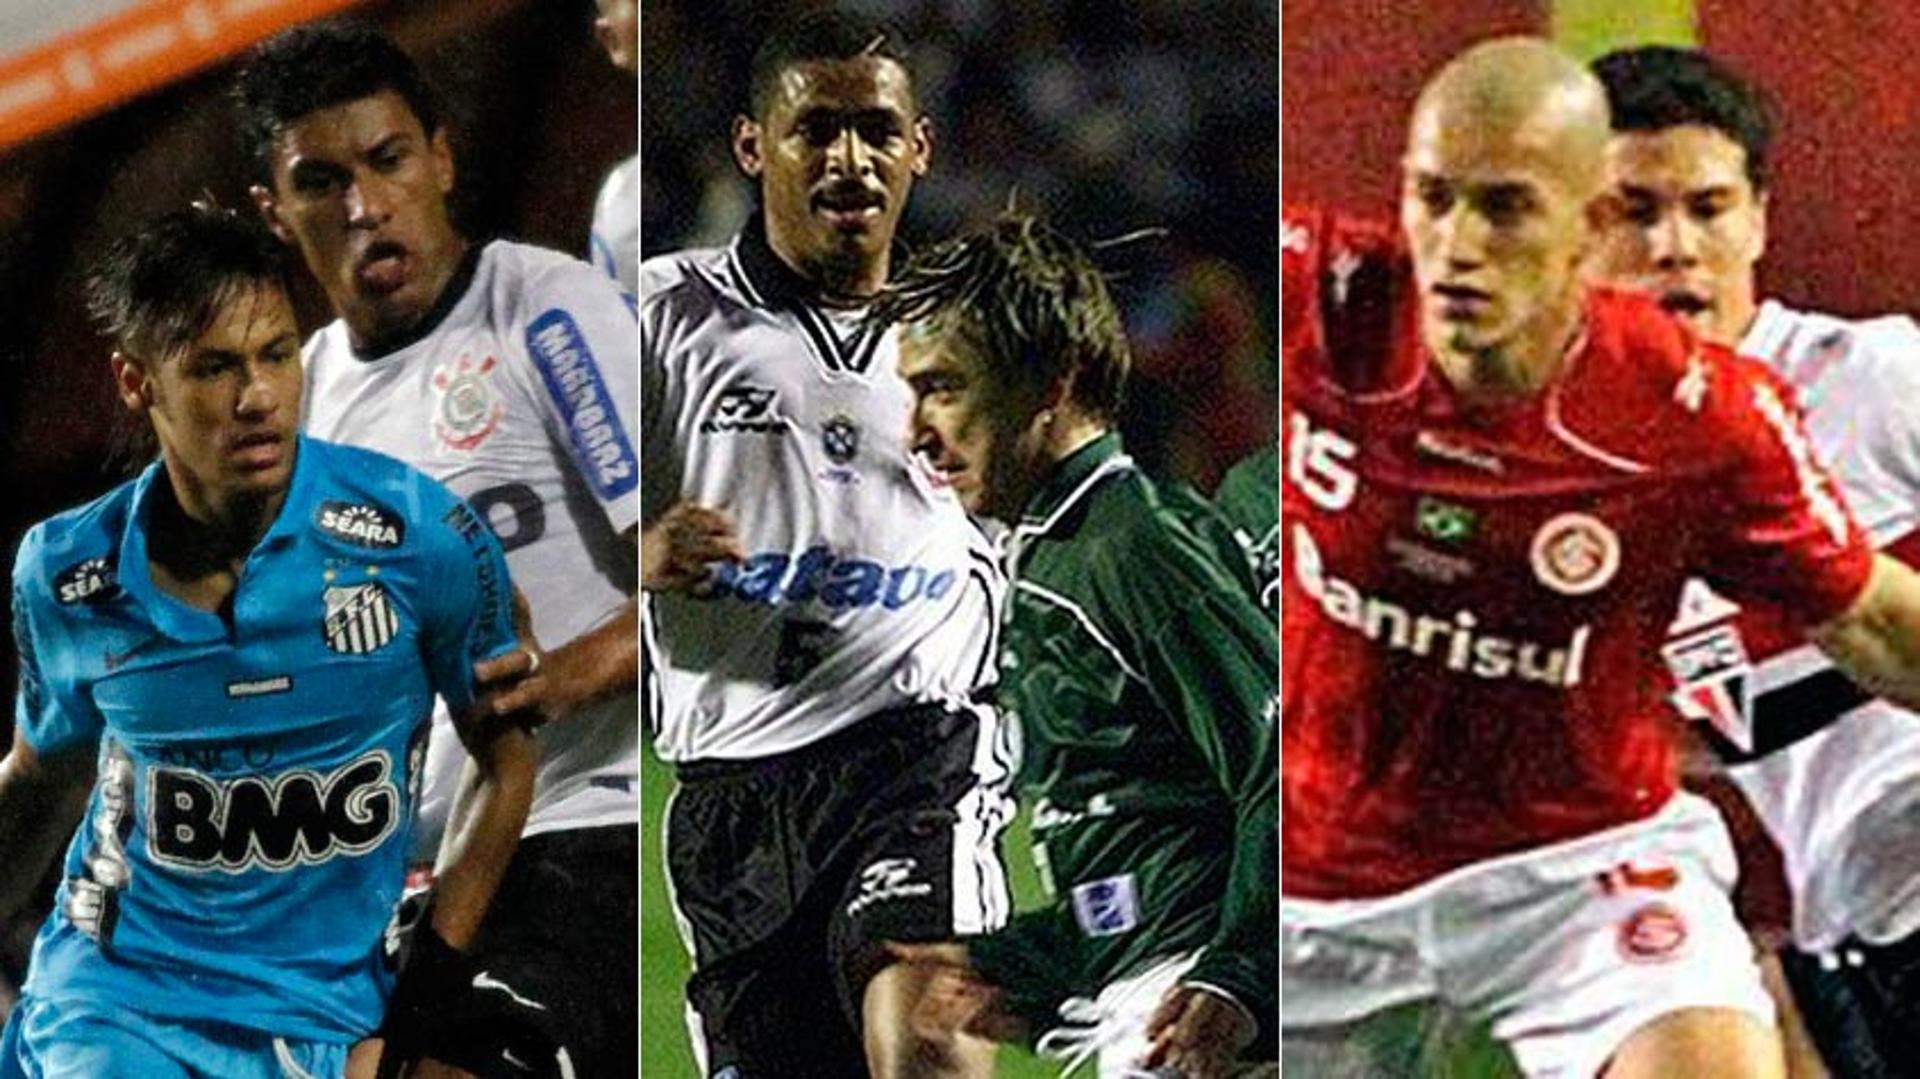 Montagem - Corinthians x Santos(2012), Inter x São Paulo (2010) e Corinthians x Palmeiras (2000).